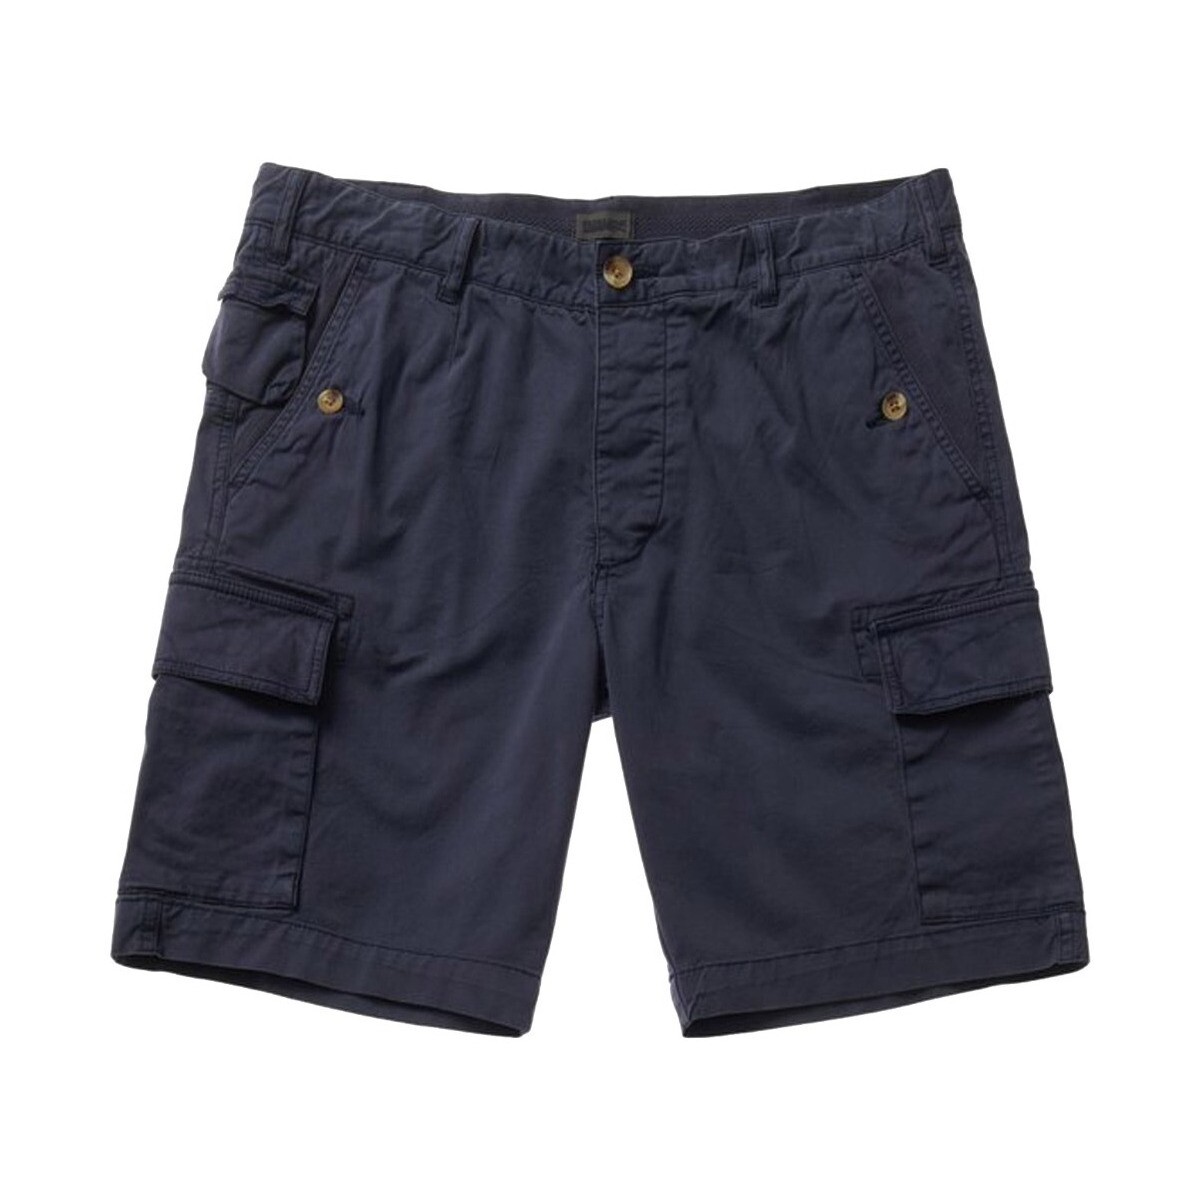 Kleidung Herren Shorts / Bermudas Blauer 23SBLUP04324 Blau